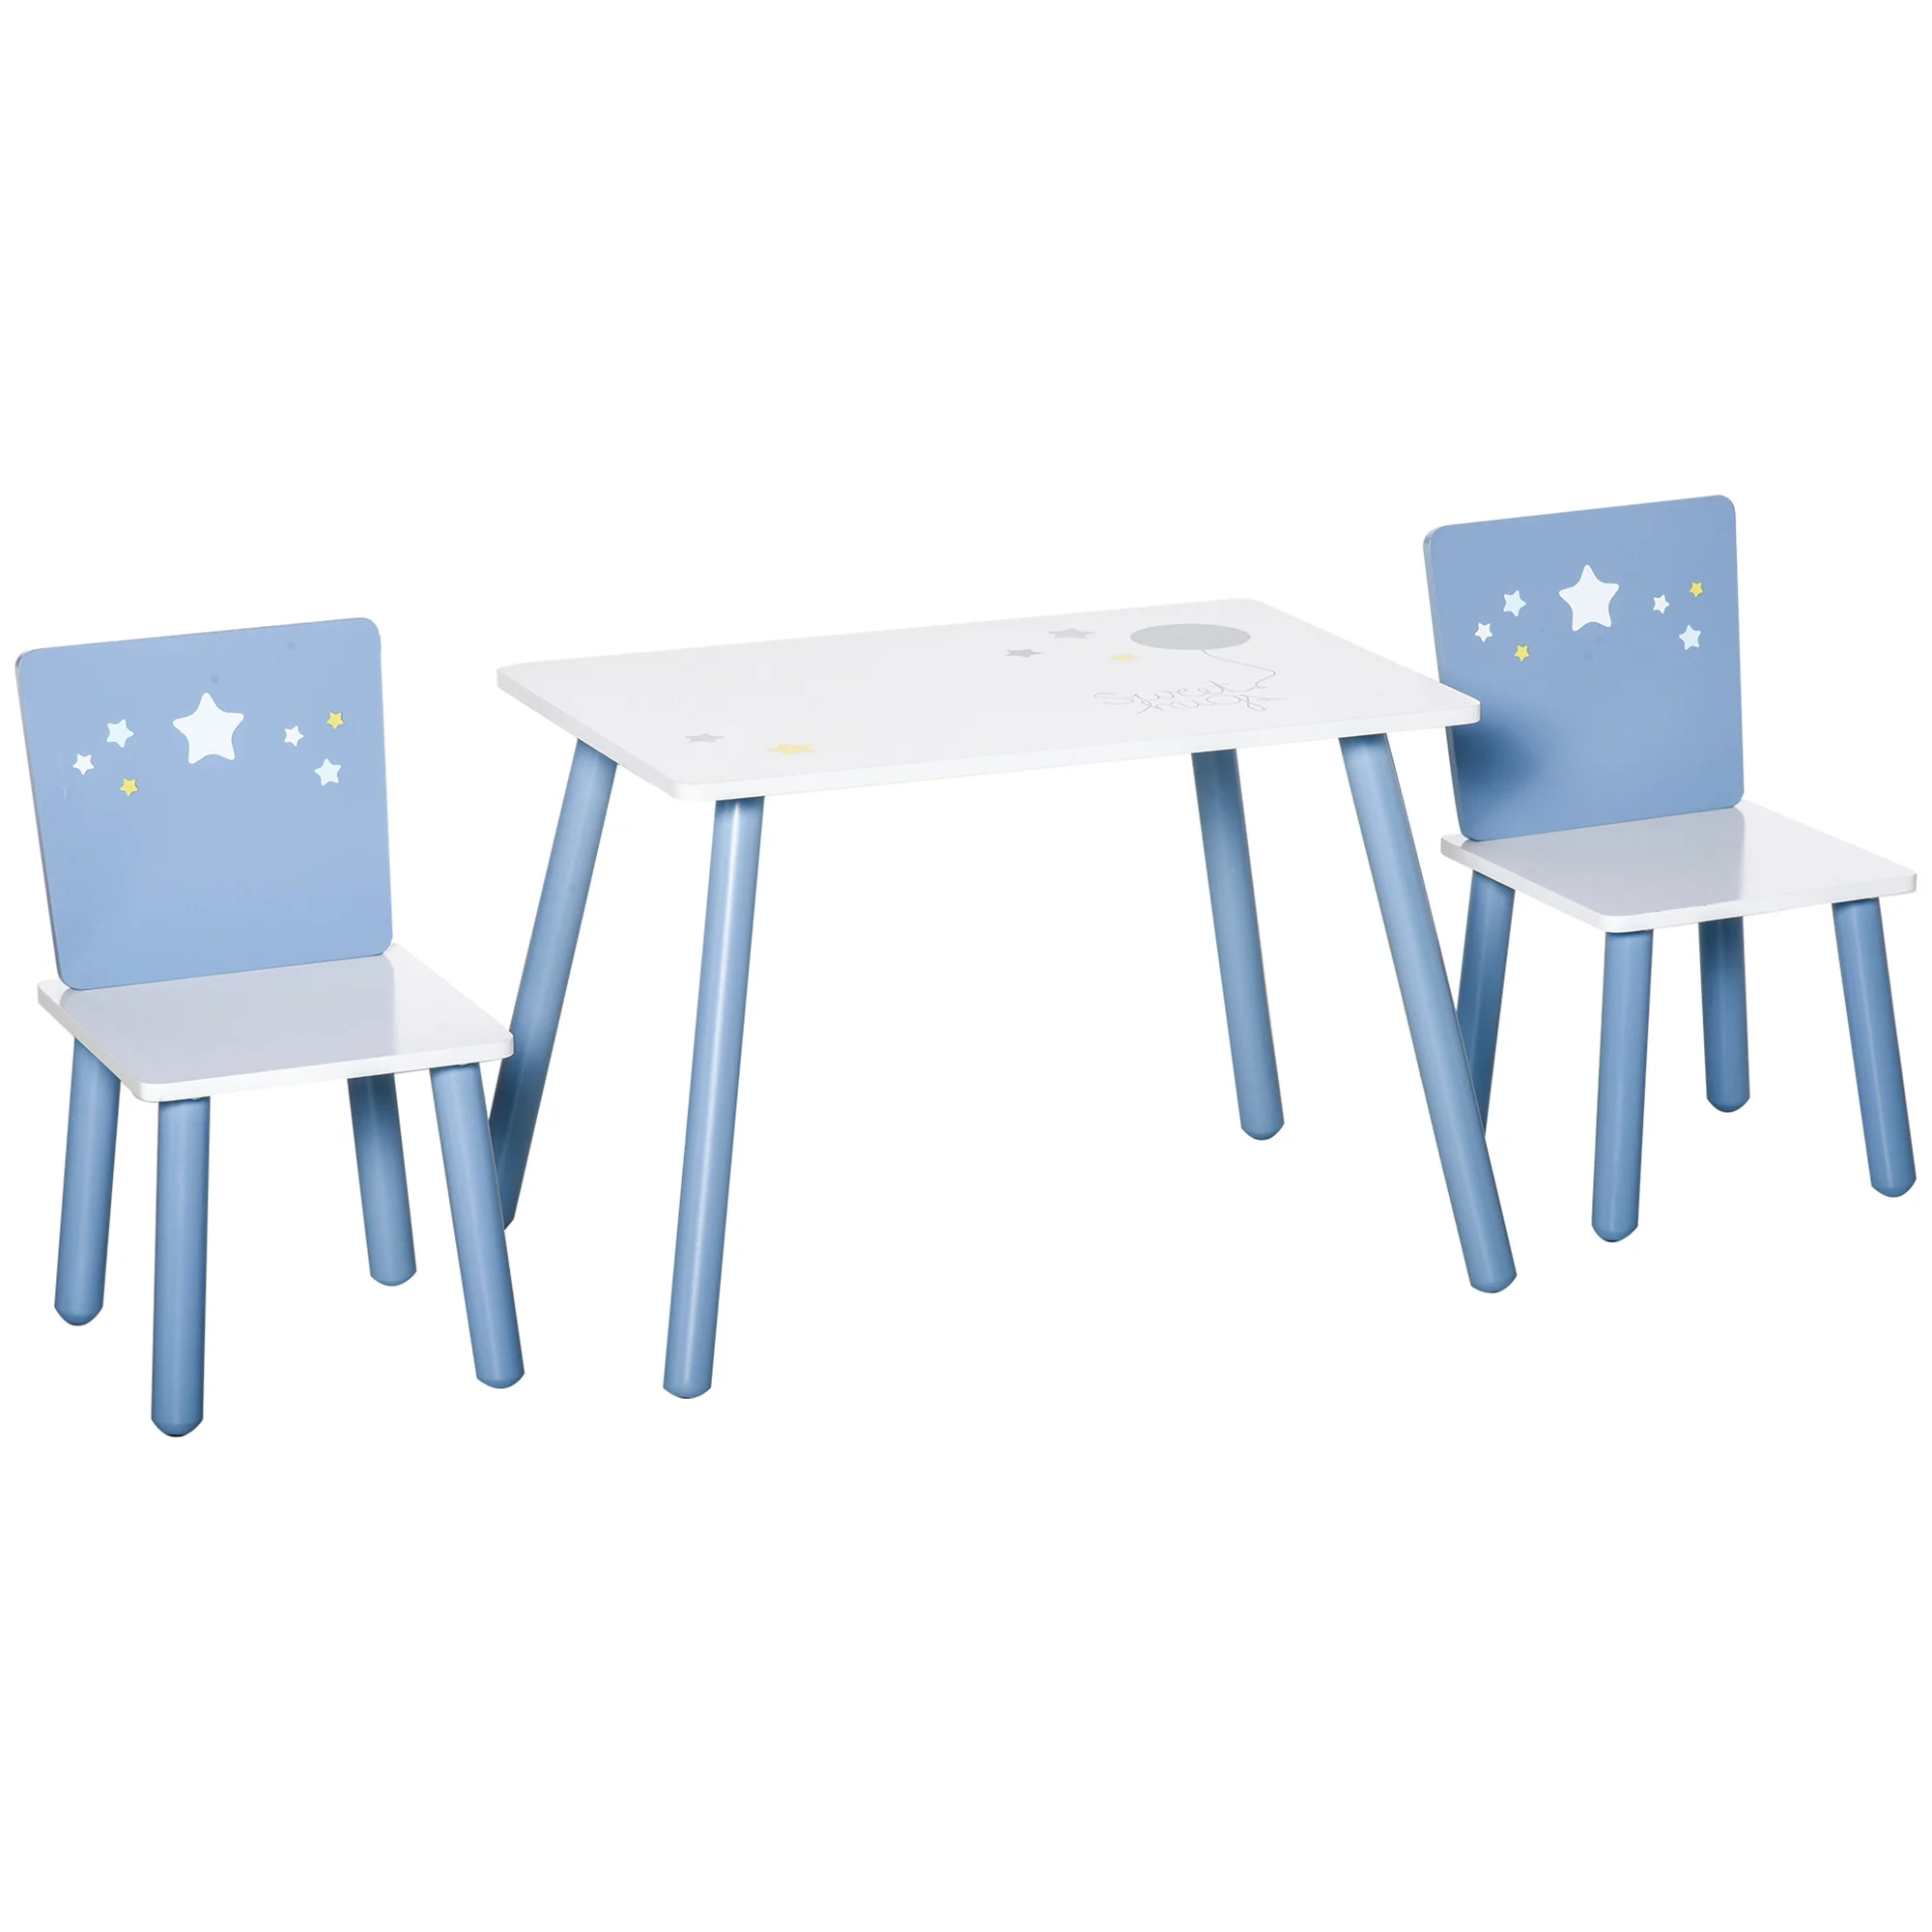 Juego infantil de mesa y sillas Homcom multicolor 76,5x54,5x49,5 cm